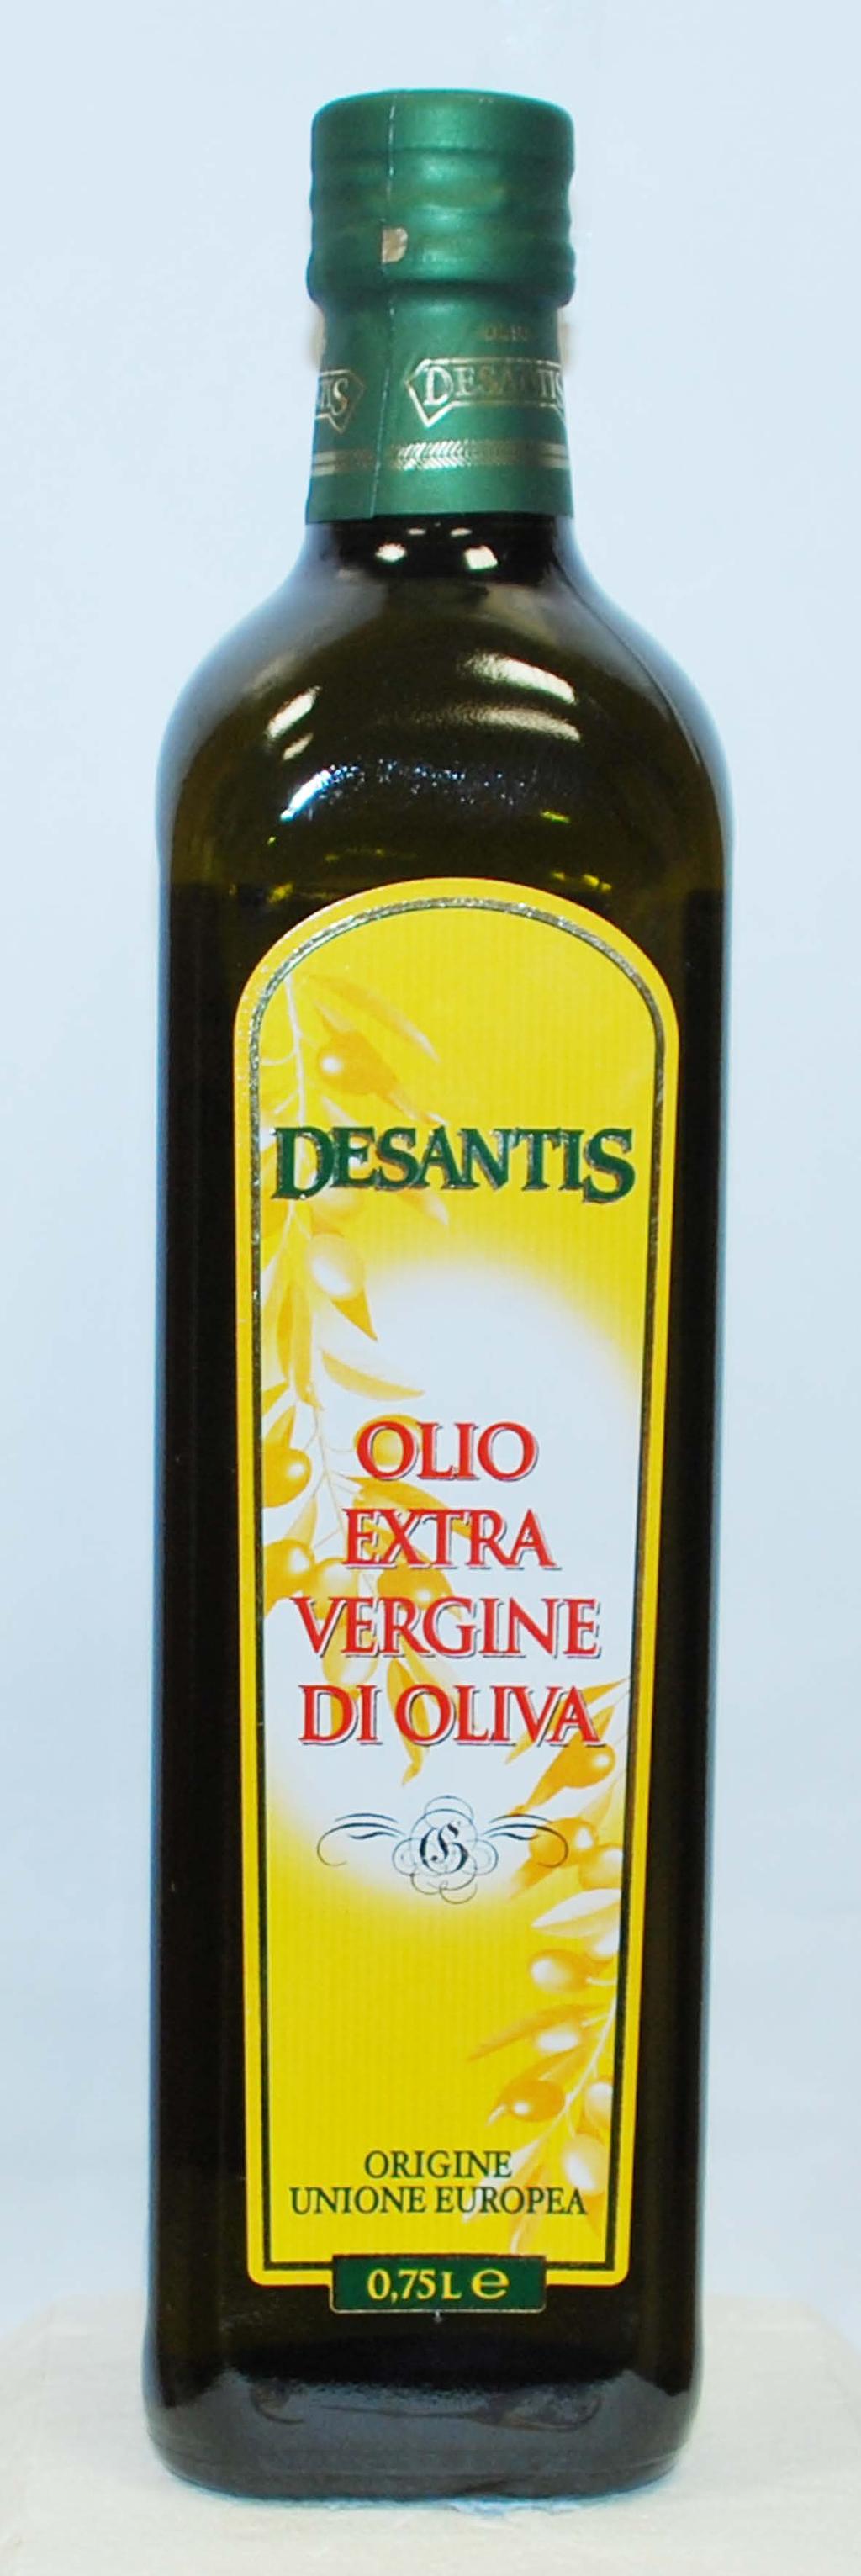 OLIO EXTRA VERGINE DI OLIVA DE SANTIS 750 ml ( 3,99 al lt)